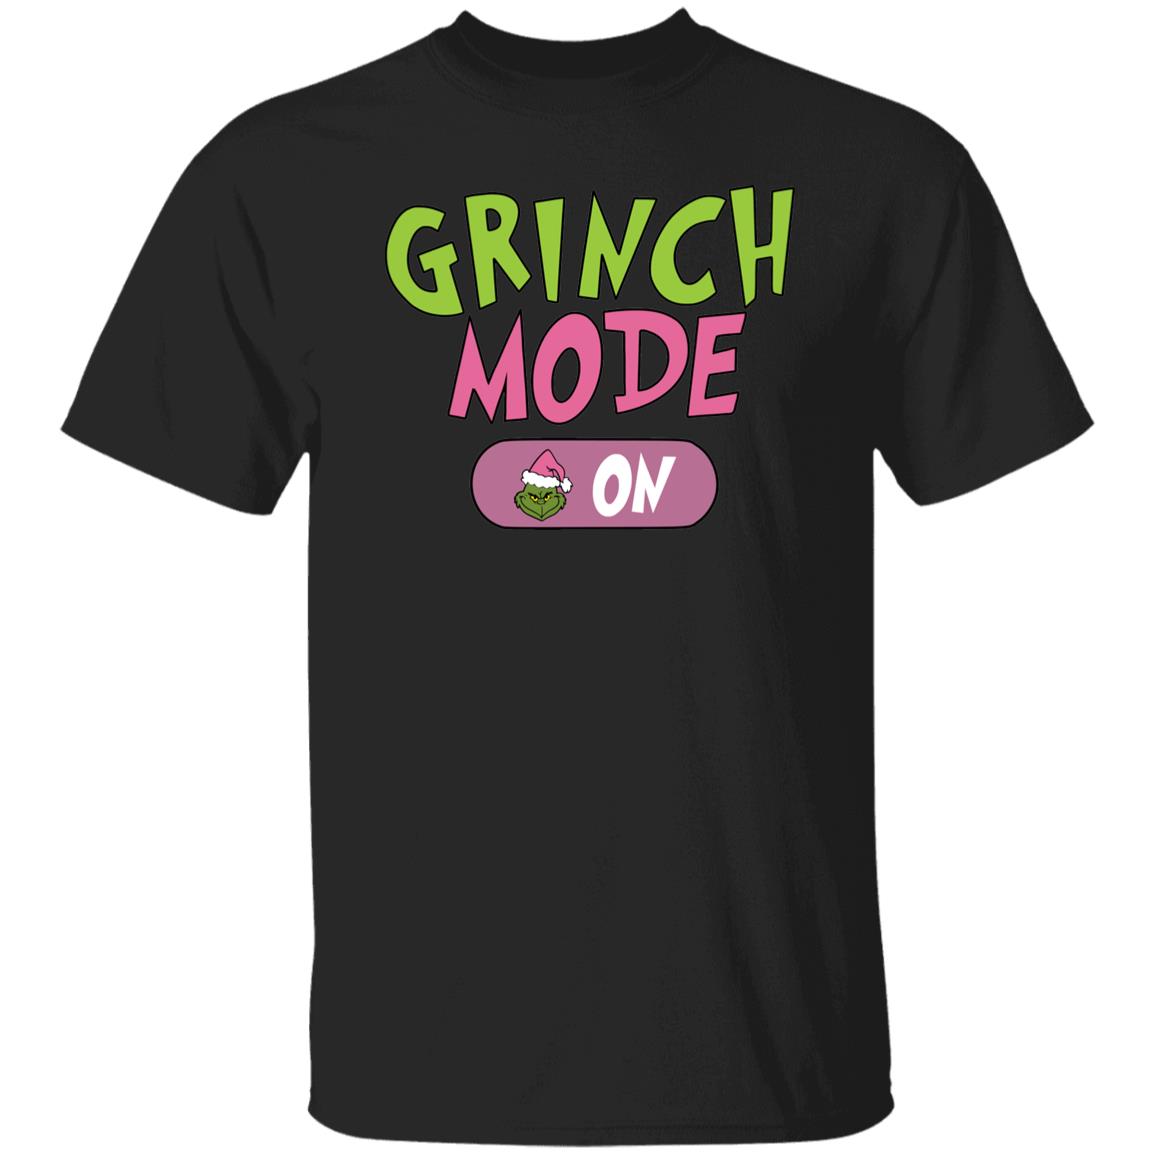 Grinch Mode On Funny Christmas Gift Shirt